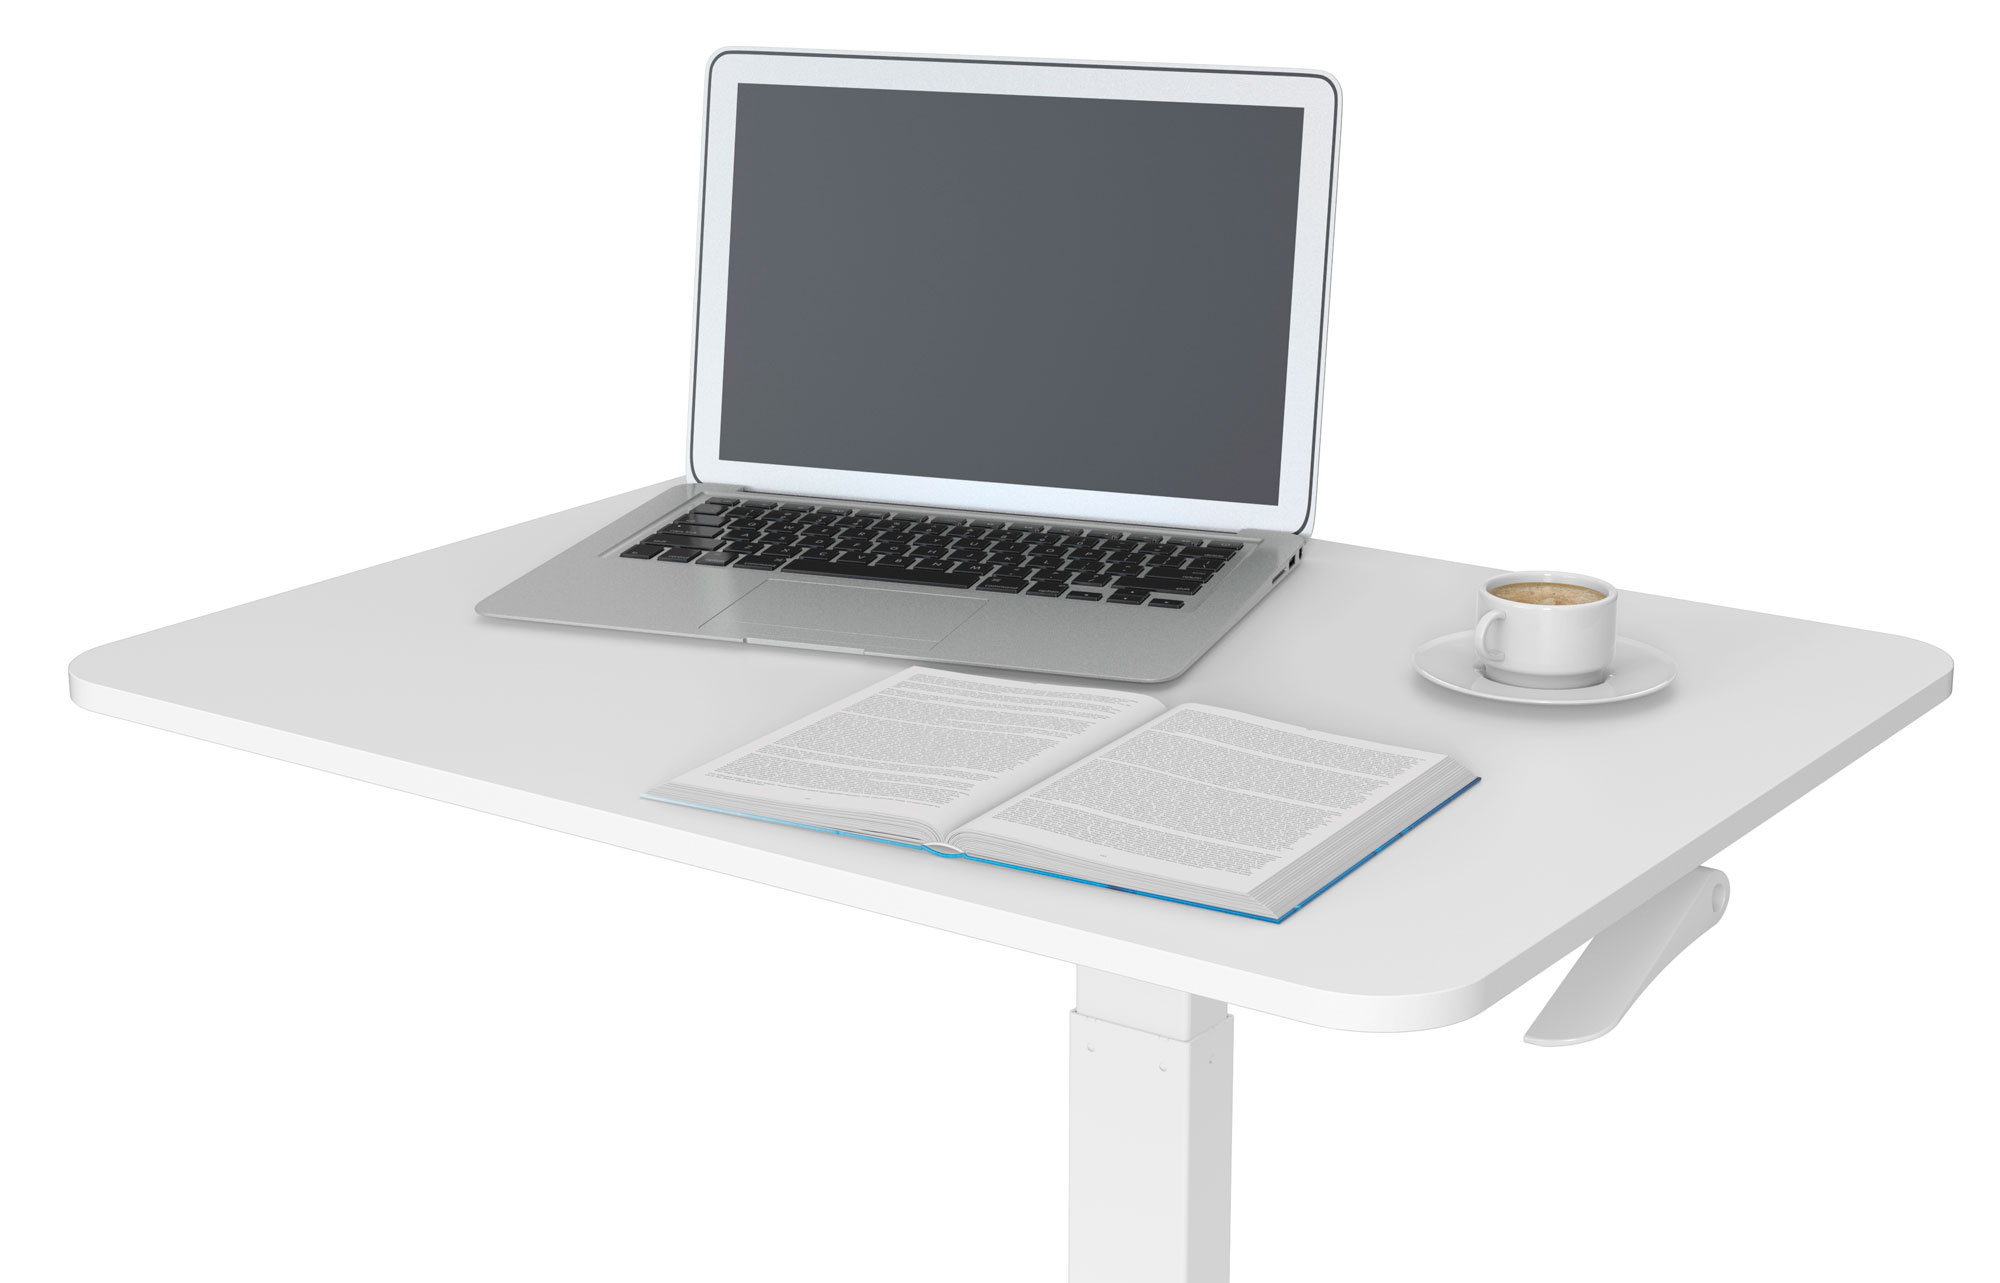 Стол для ноутбука Cactus VM-FDS102 столешница МДФ белый 80x60x121см (CS-FDS102WWT) 